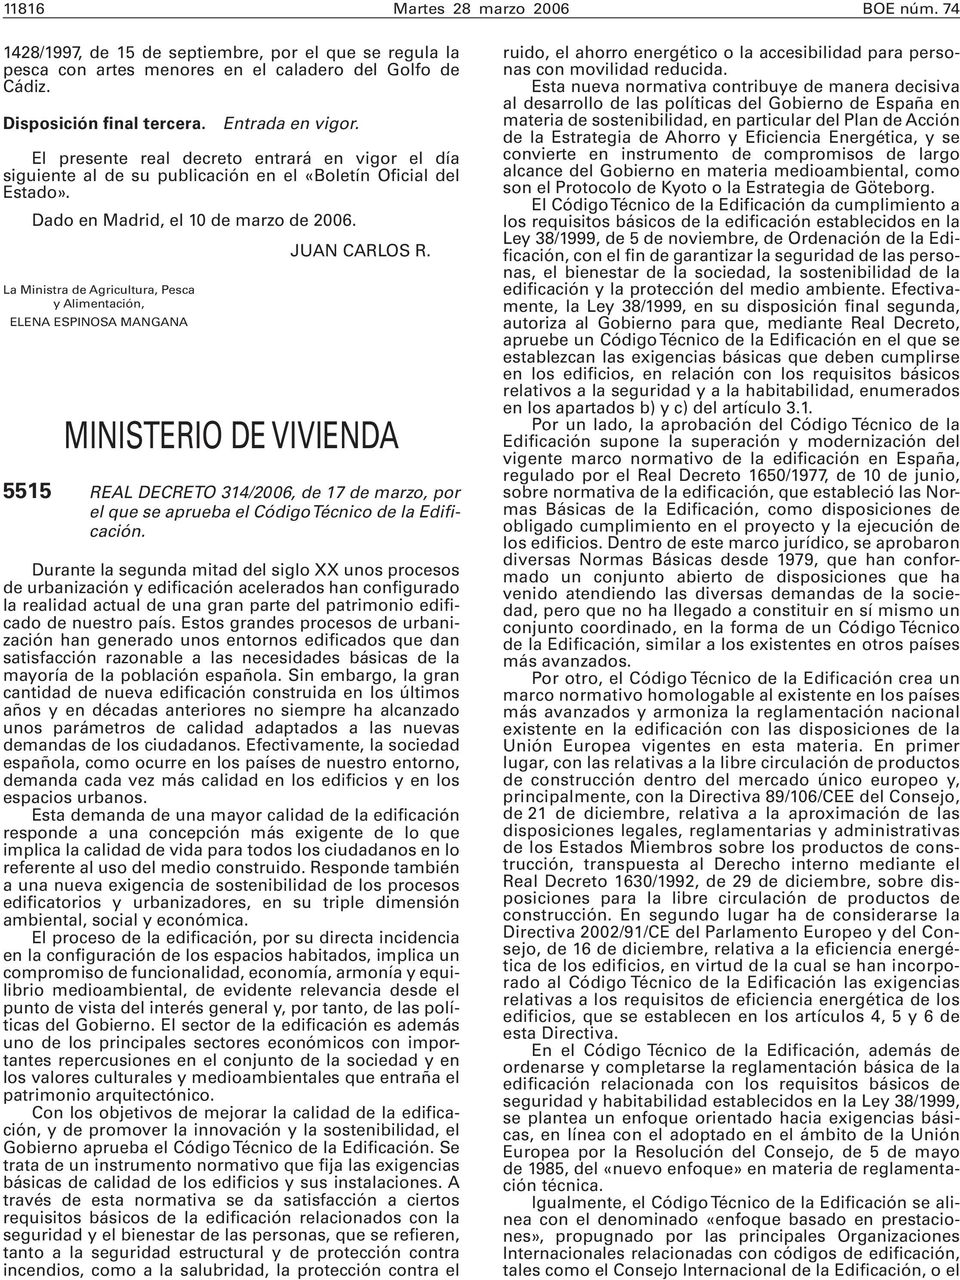 La Ministra de Agricultura, Pesca y Alimentación, ELENA ESPINOSA MANGANA MINISTERIO DE VIVIENDA 5515 REAL DECRETO 314/2006, de 17 de marzo, por el que se aprueba el Código Técnico de la Edificación.